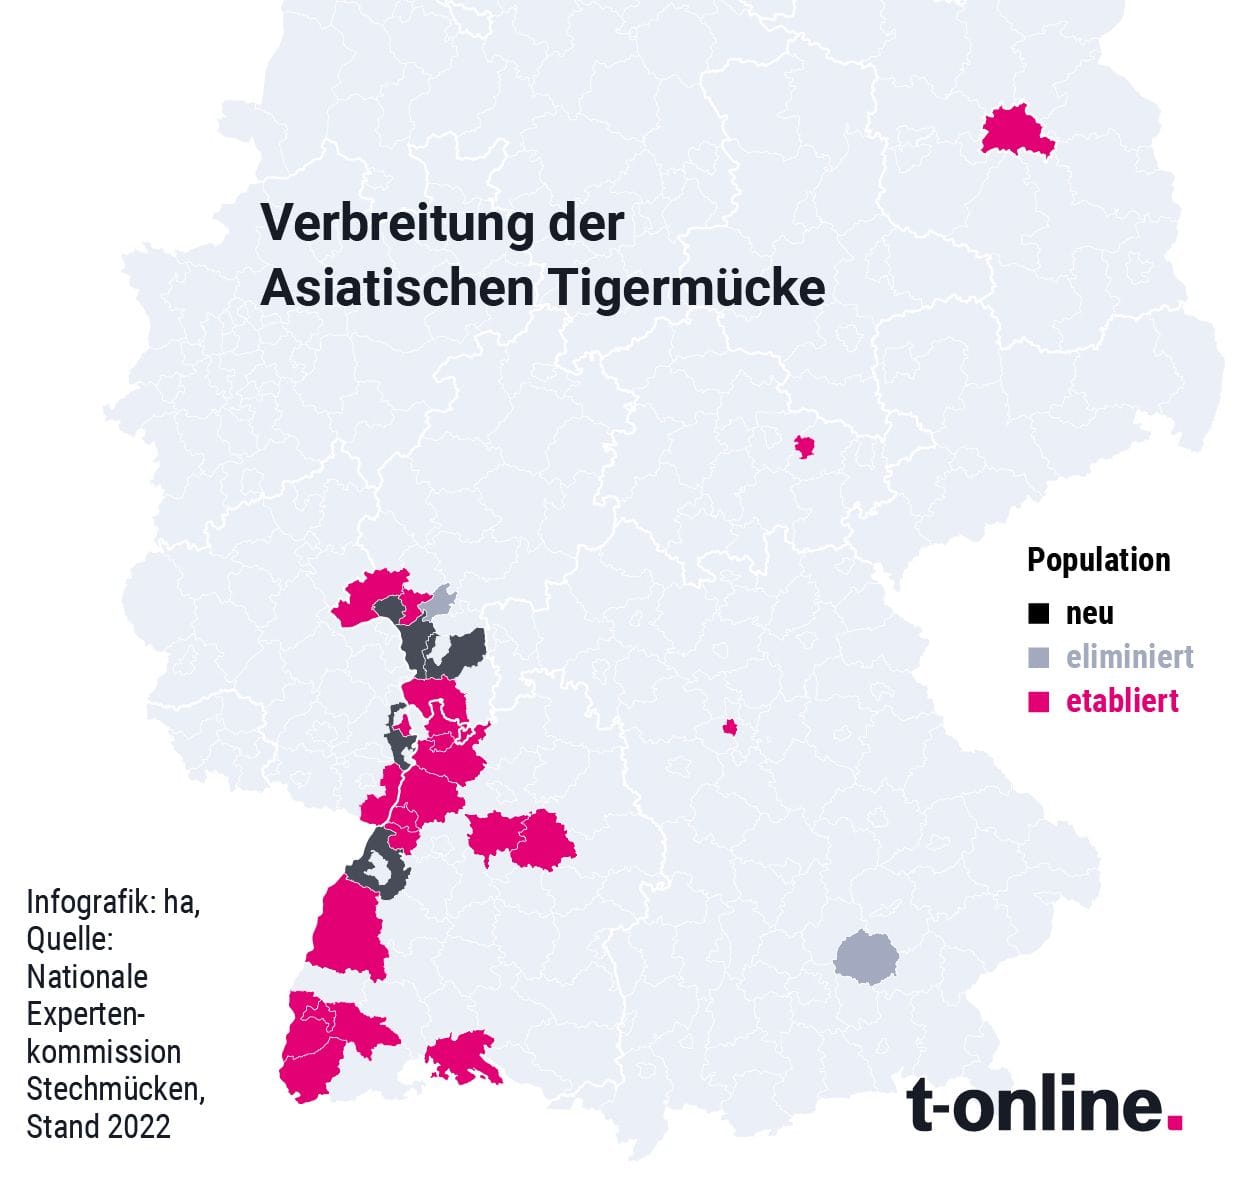 Hier ist die Asiatische Tigermücke besonders verbreitet. Allerdinge wurde sie auch bereits in anderen Teilen Deutschlands nachgewiesen.